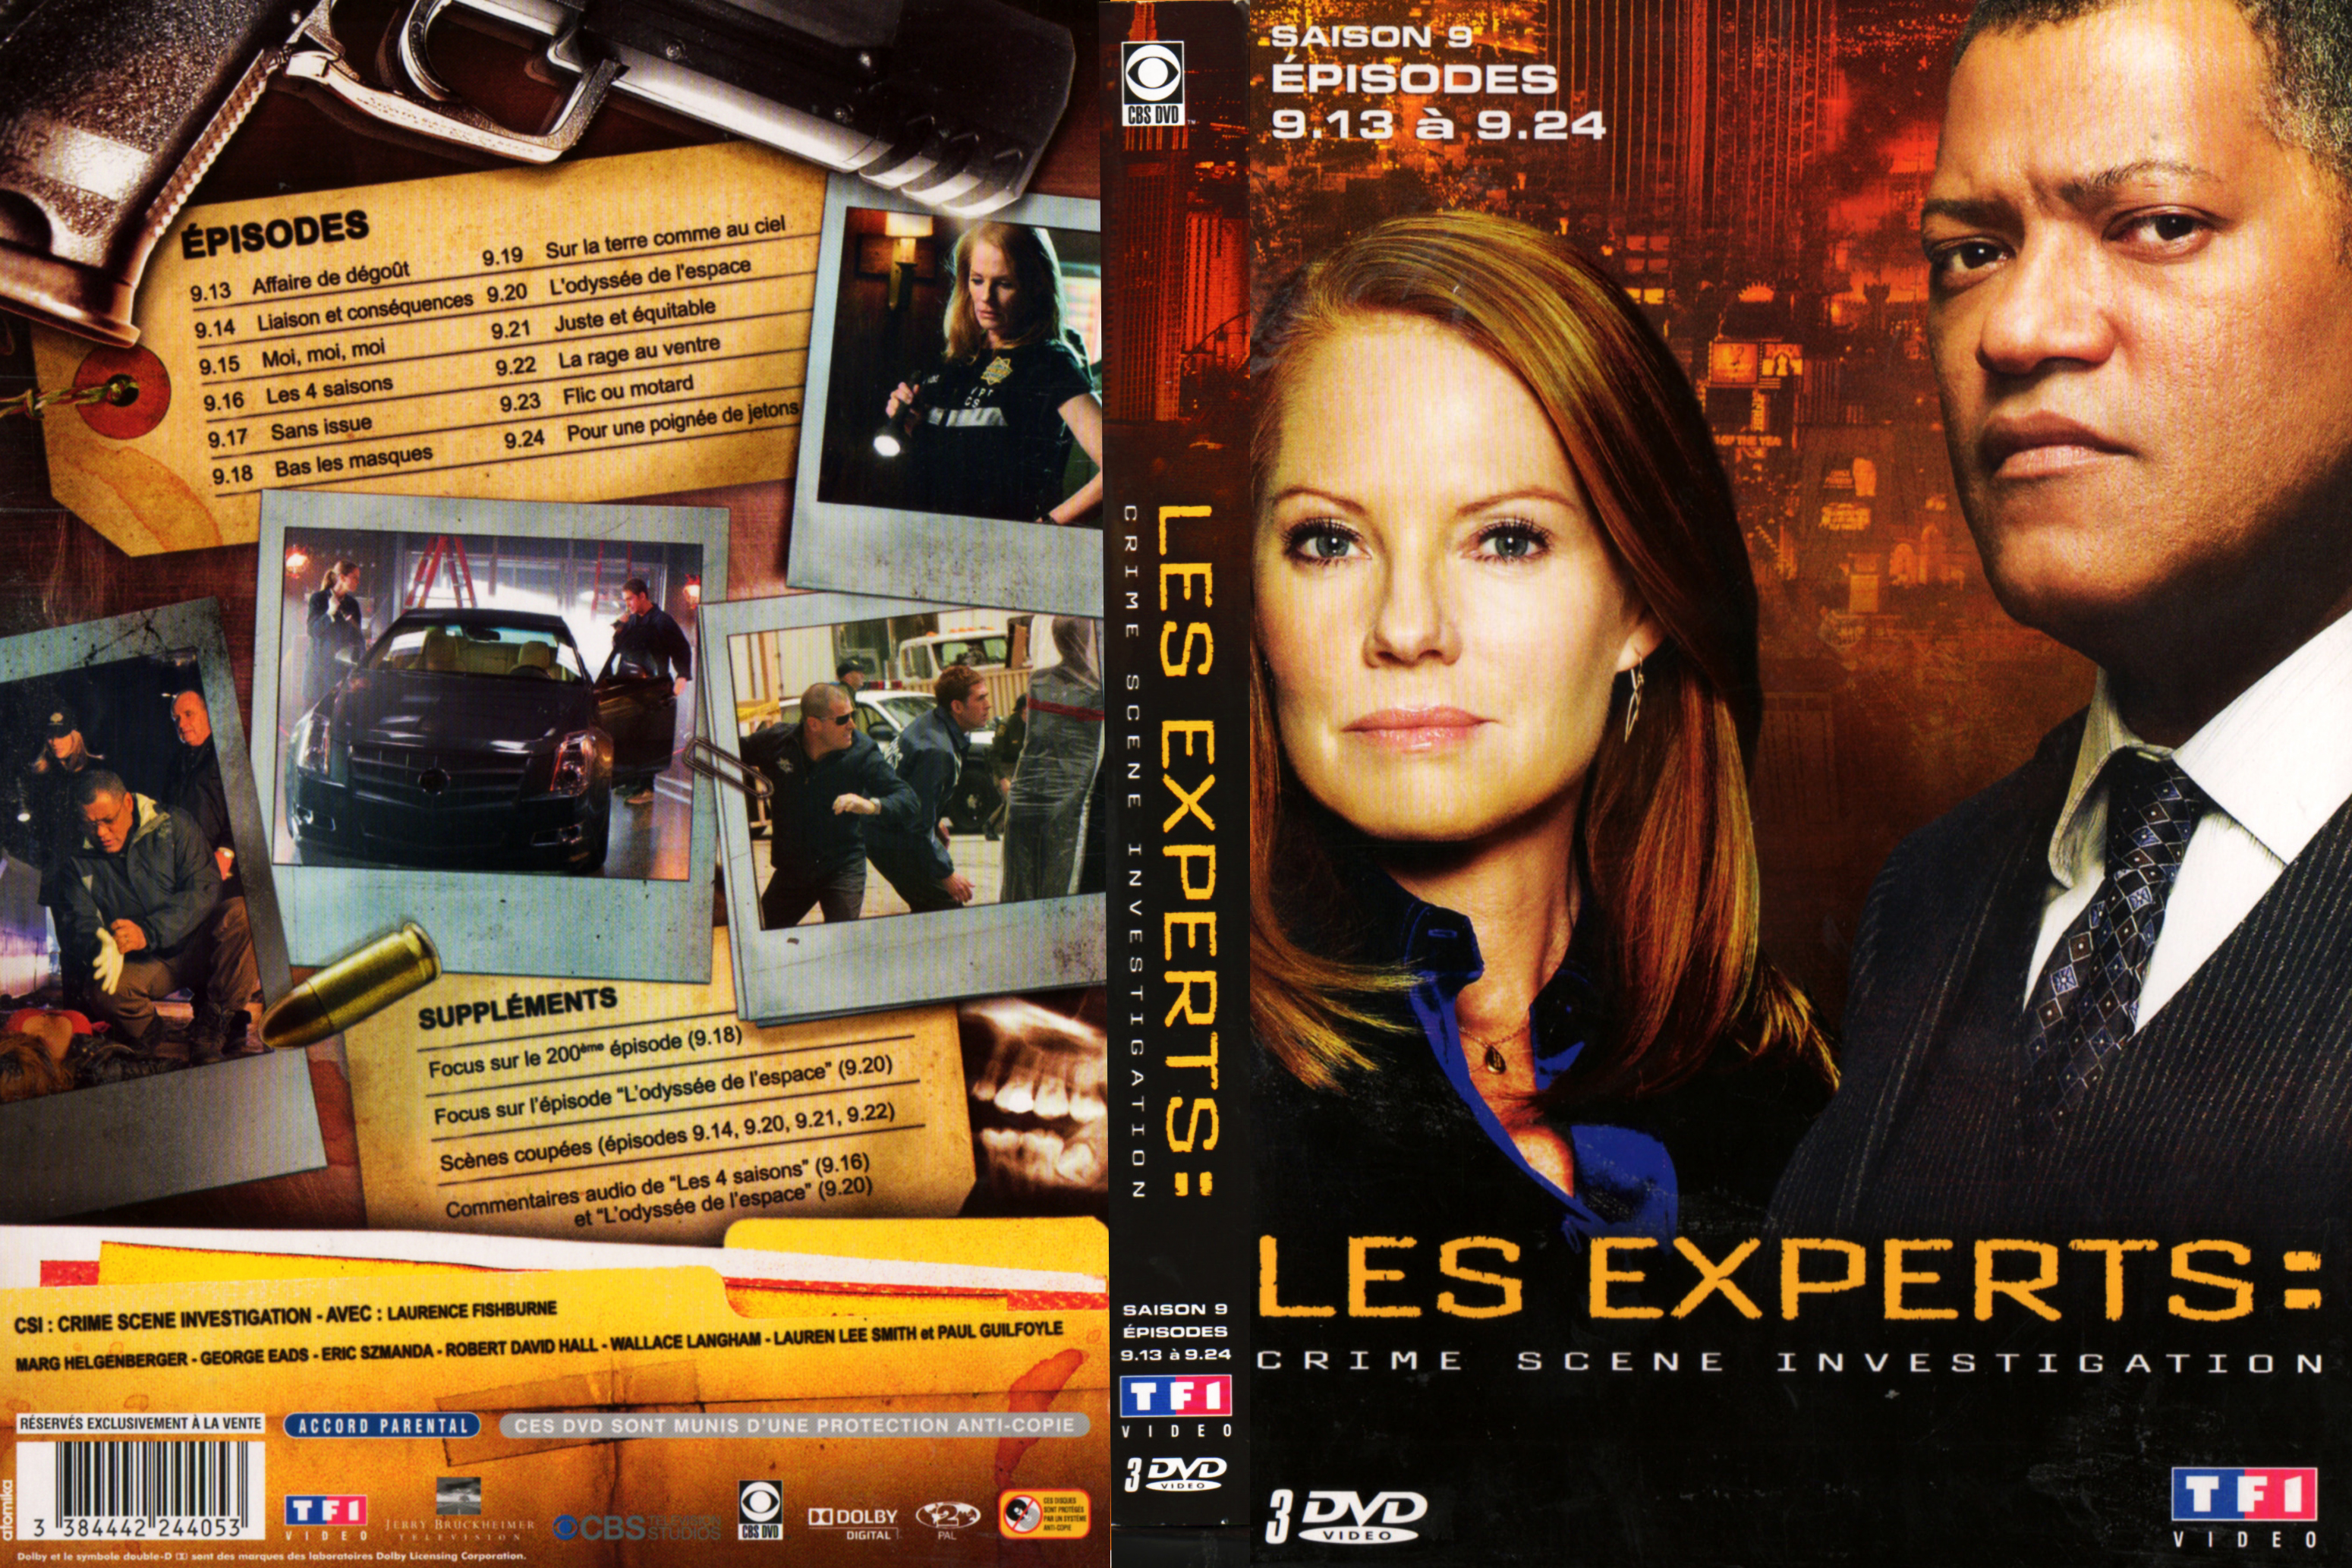 Jaquette DVD Les experts Saison 9 vol 2